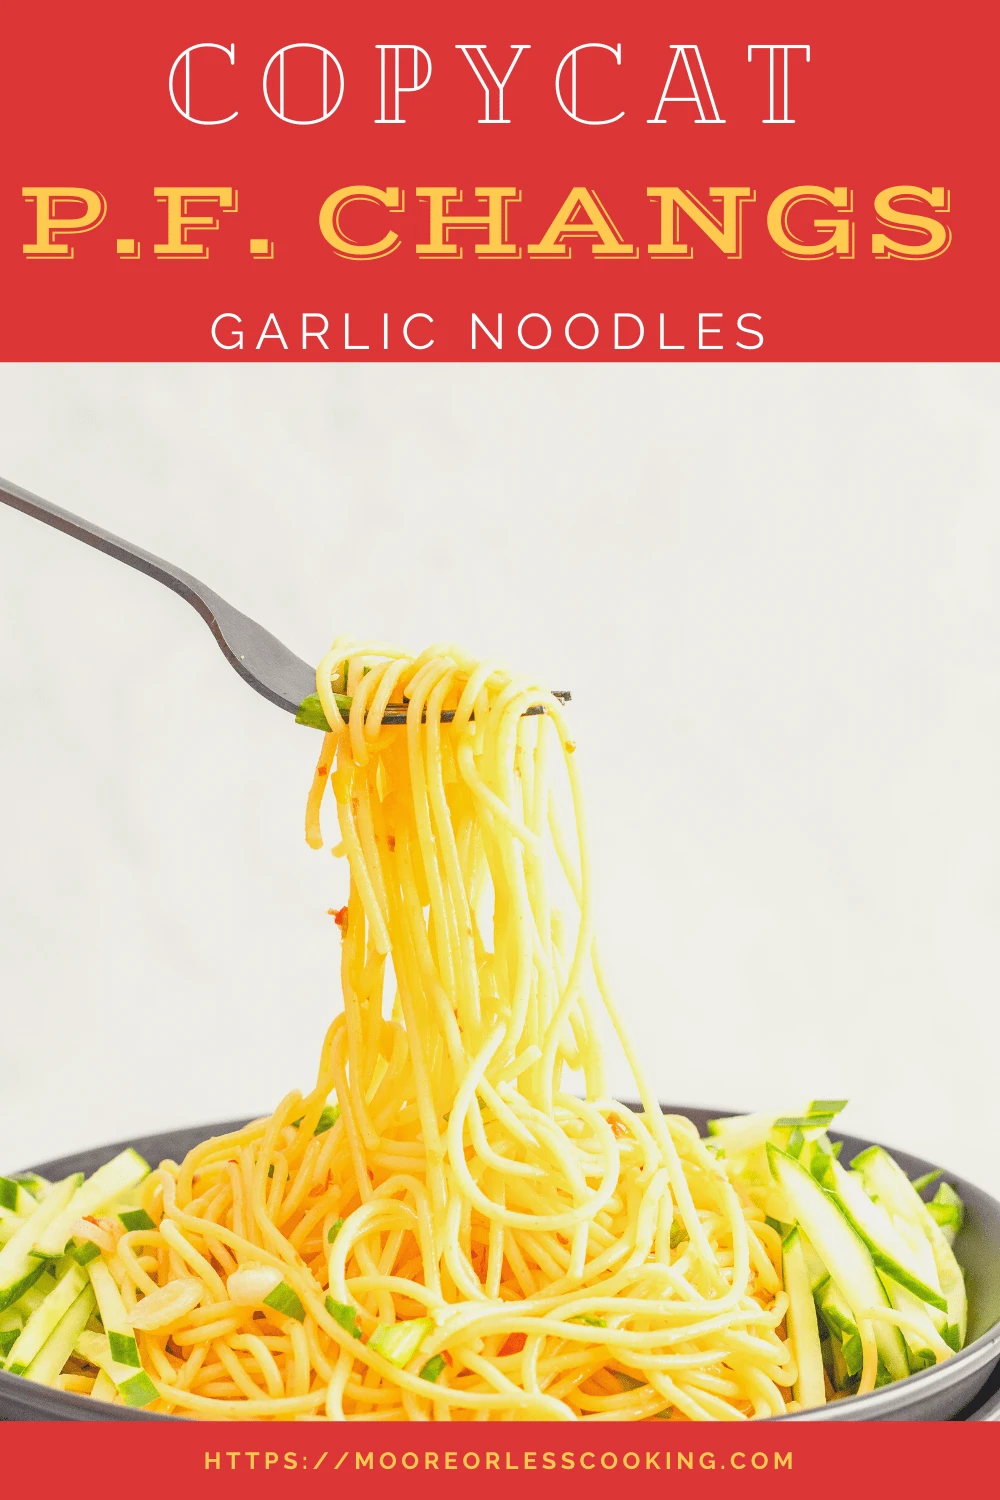 Copycat P.F. Changs Garlic Noodles